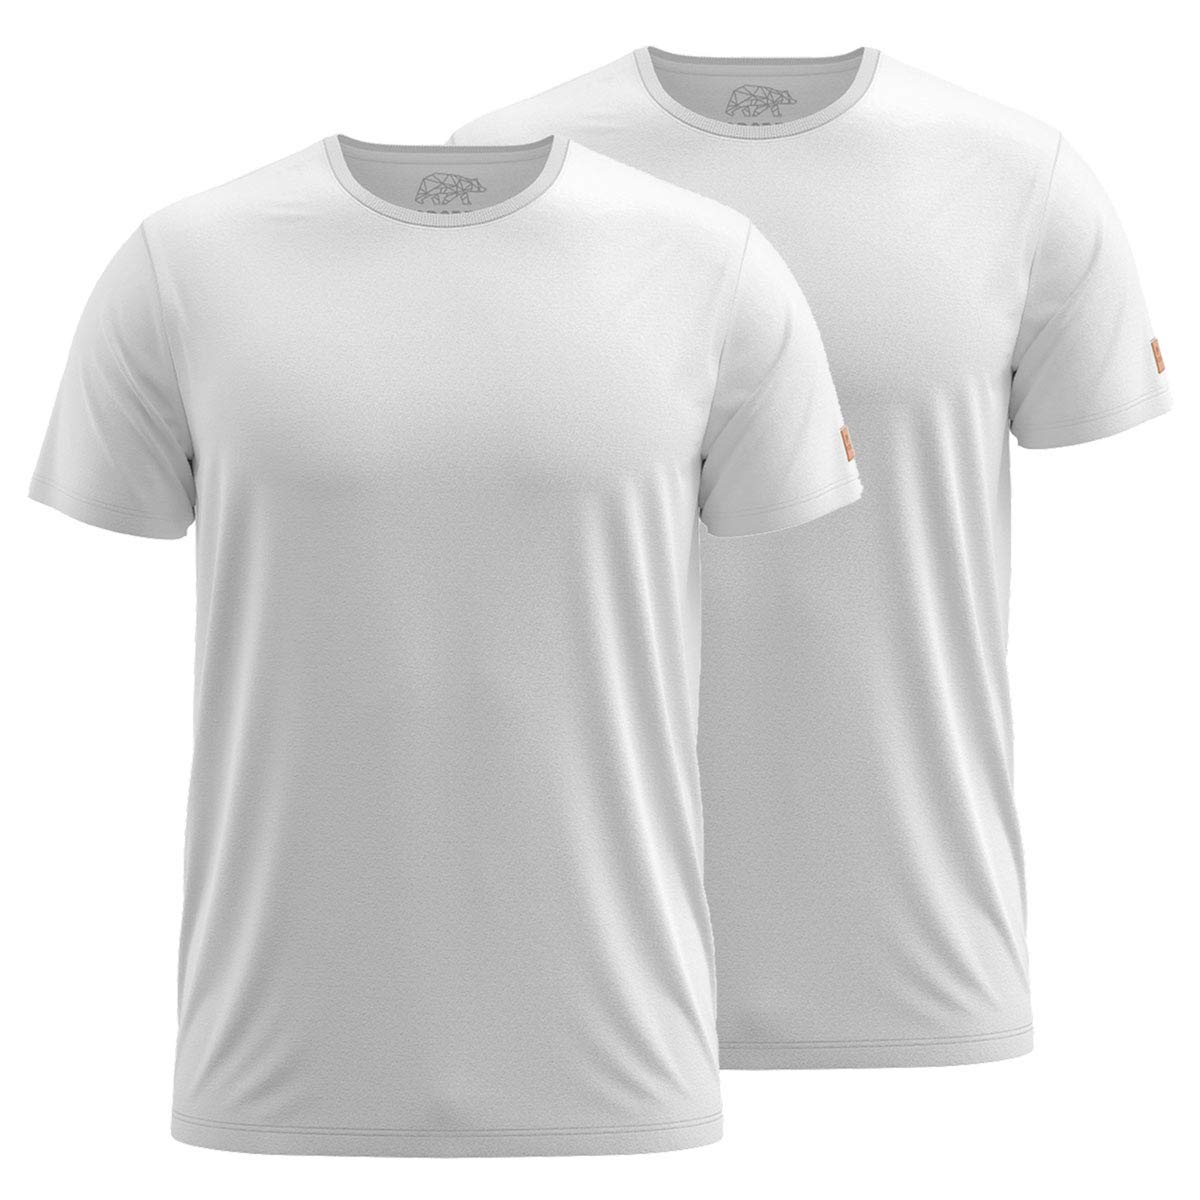 FORSBERG T-Shirt Doppelpack zum Sparpreis einfarbig Rundhals hochwertig robust bequem guter Schnitt, Farbe:Weiss, Größe:3XL